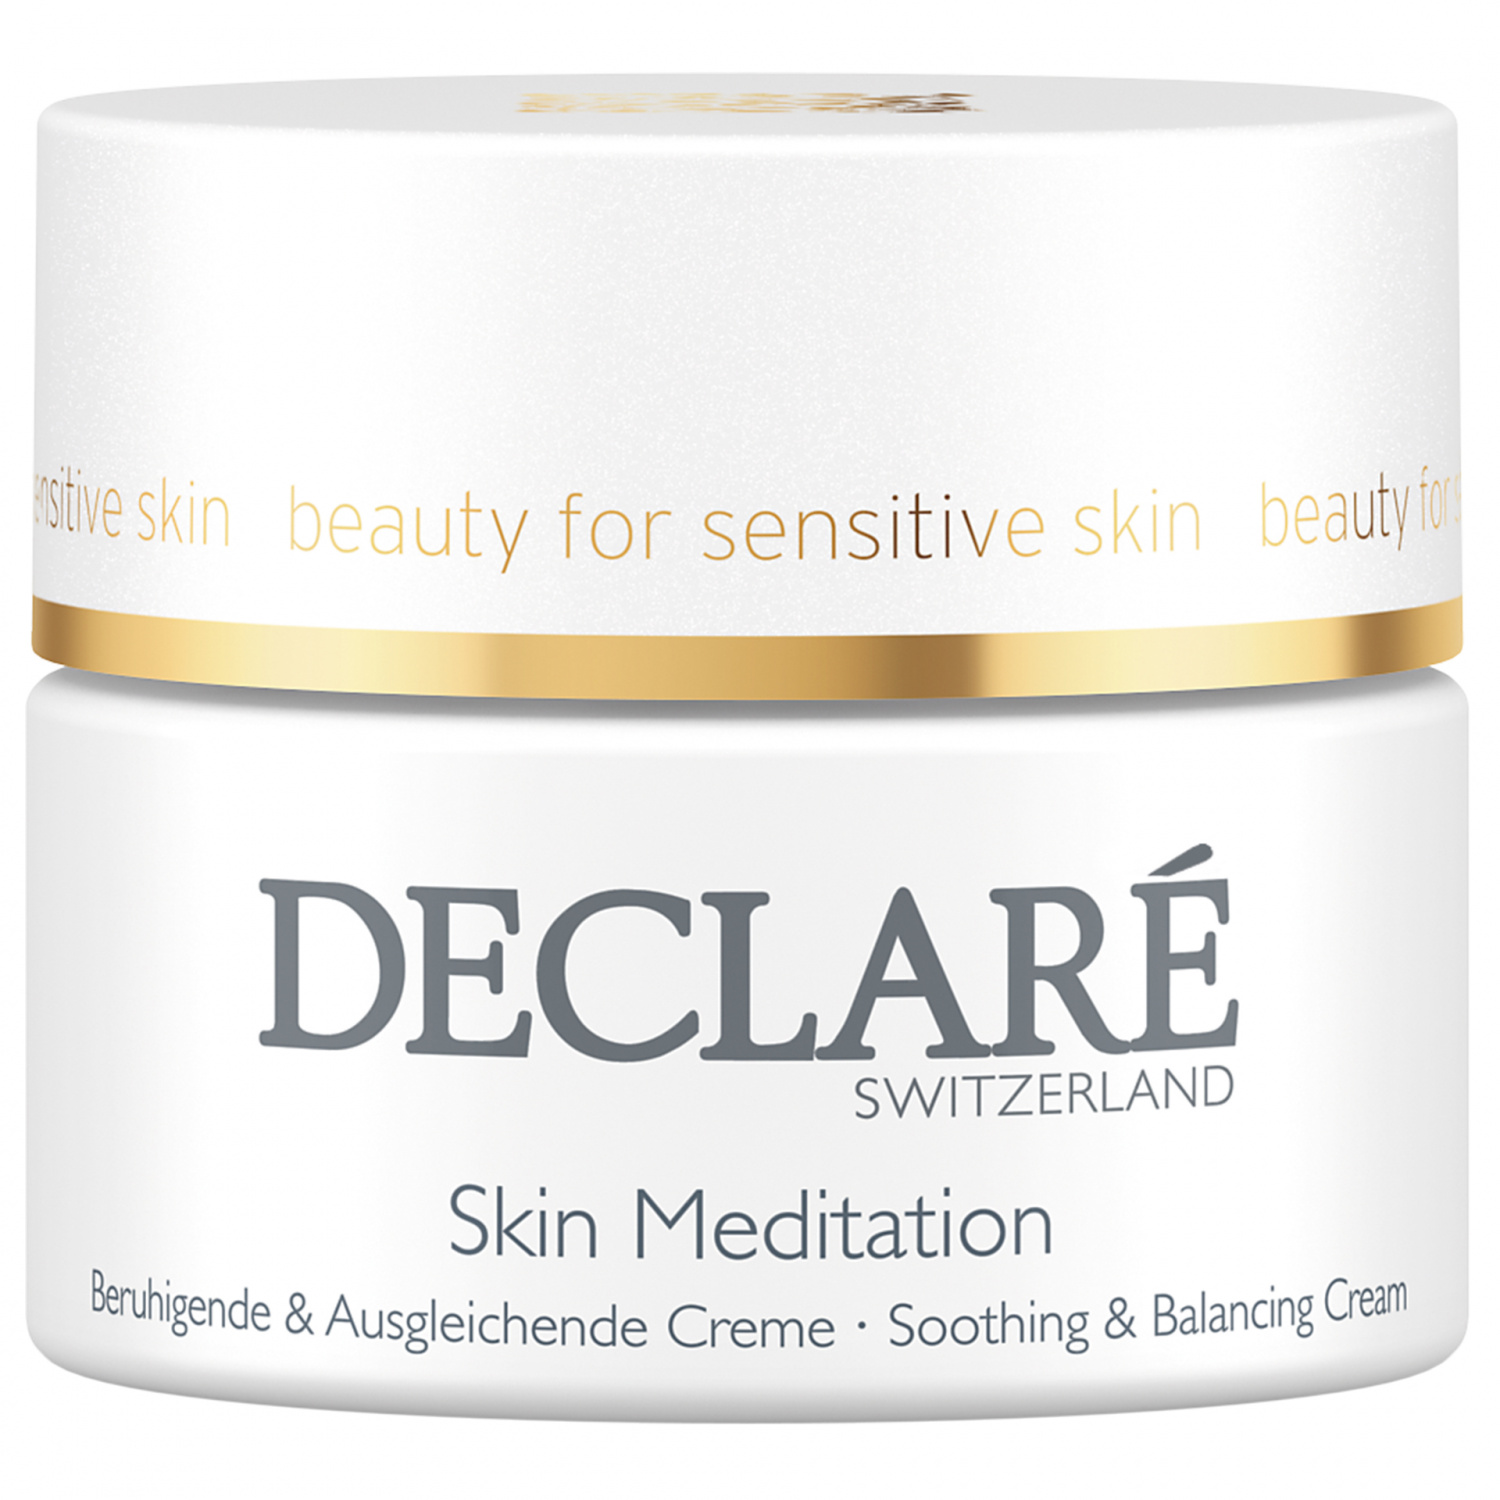 Declare Skin Meditation Soothing&Balancing Cream 50ml. - интернет-магазин профессиональной косметики Spadream, изображение 30731